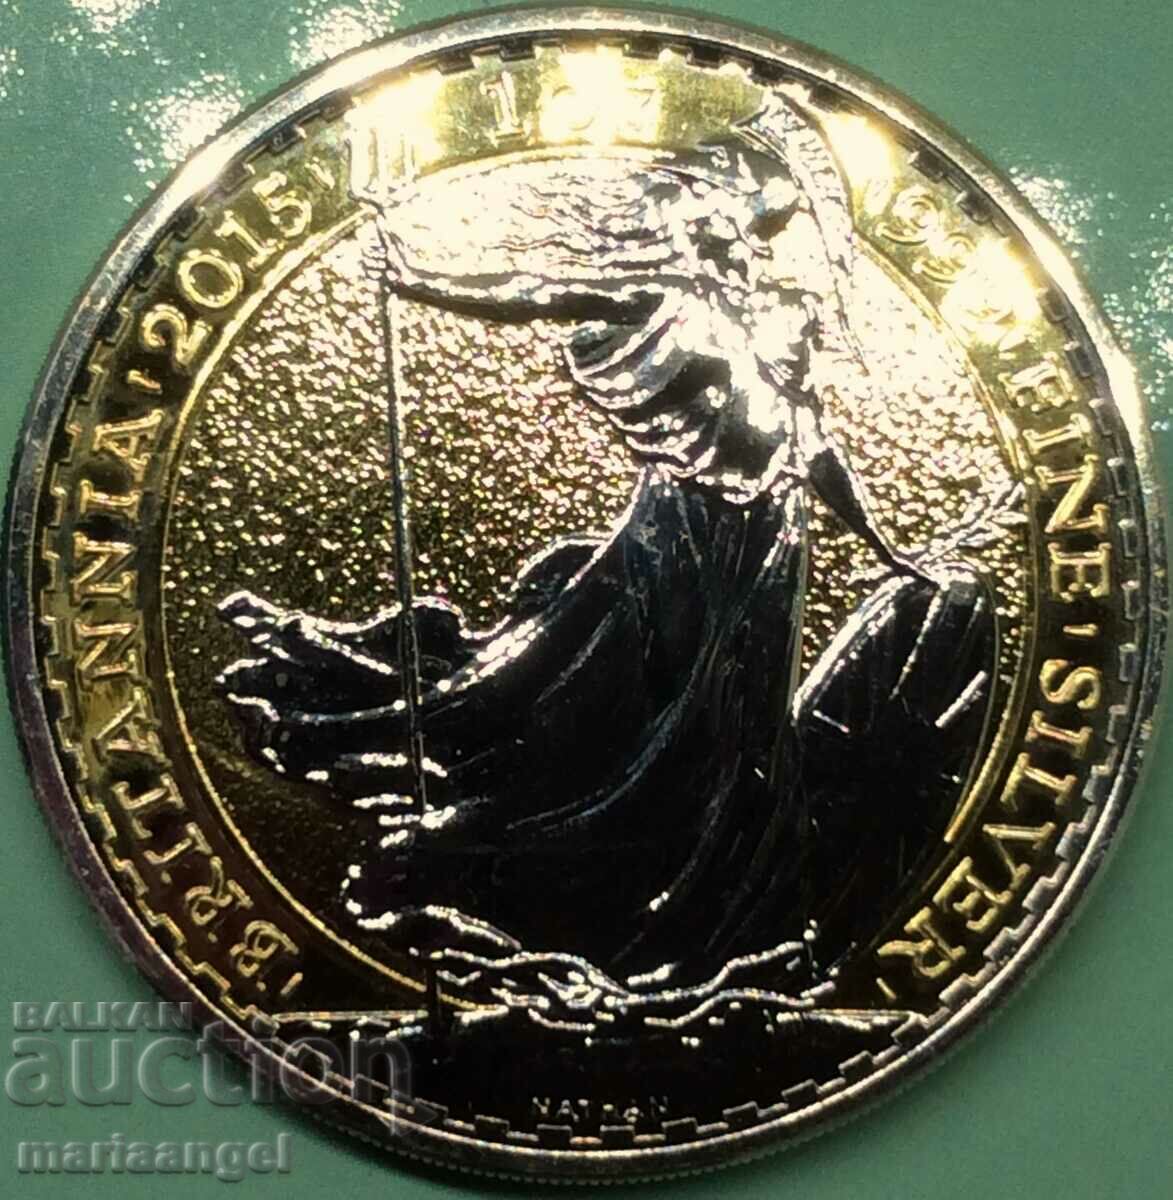 1 Oz Ounce 2 Pounds 2015 Elizabeth II Great Britain UNC